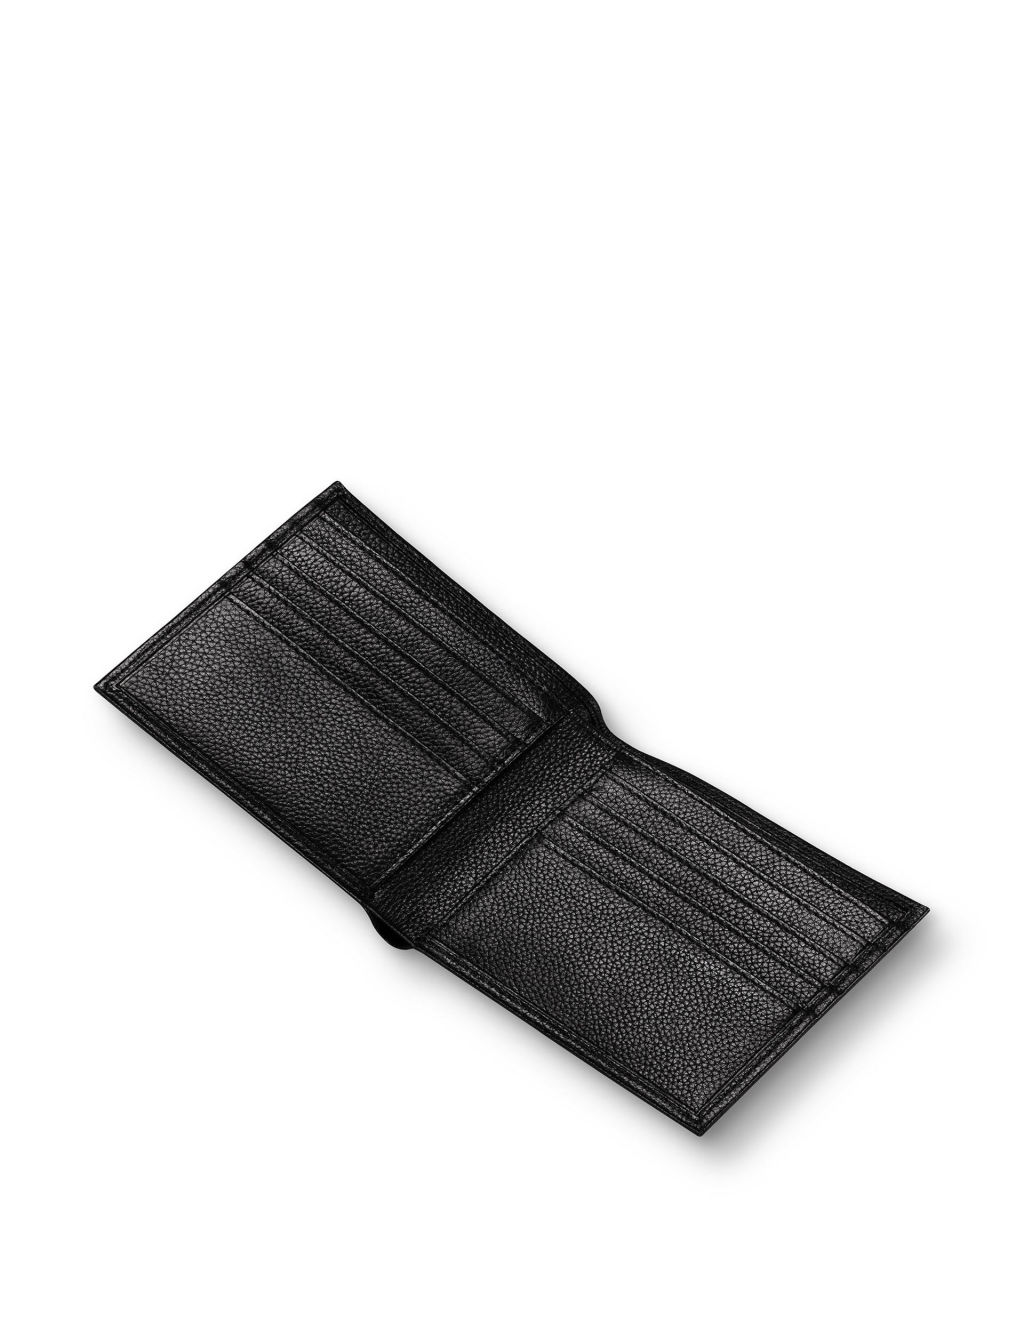 Leather Pebble Grain Bi-fold Wallet 2 of 3